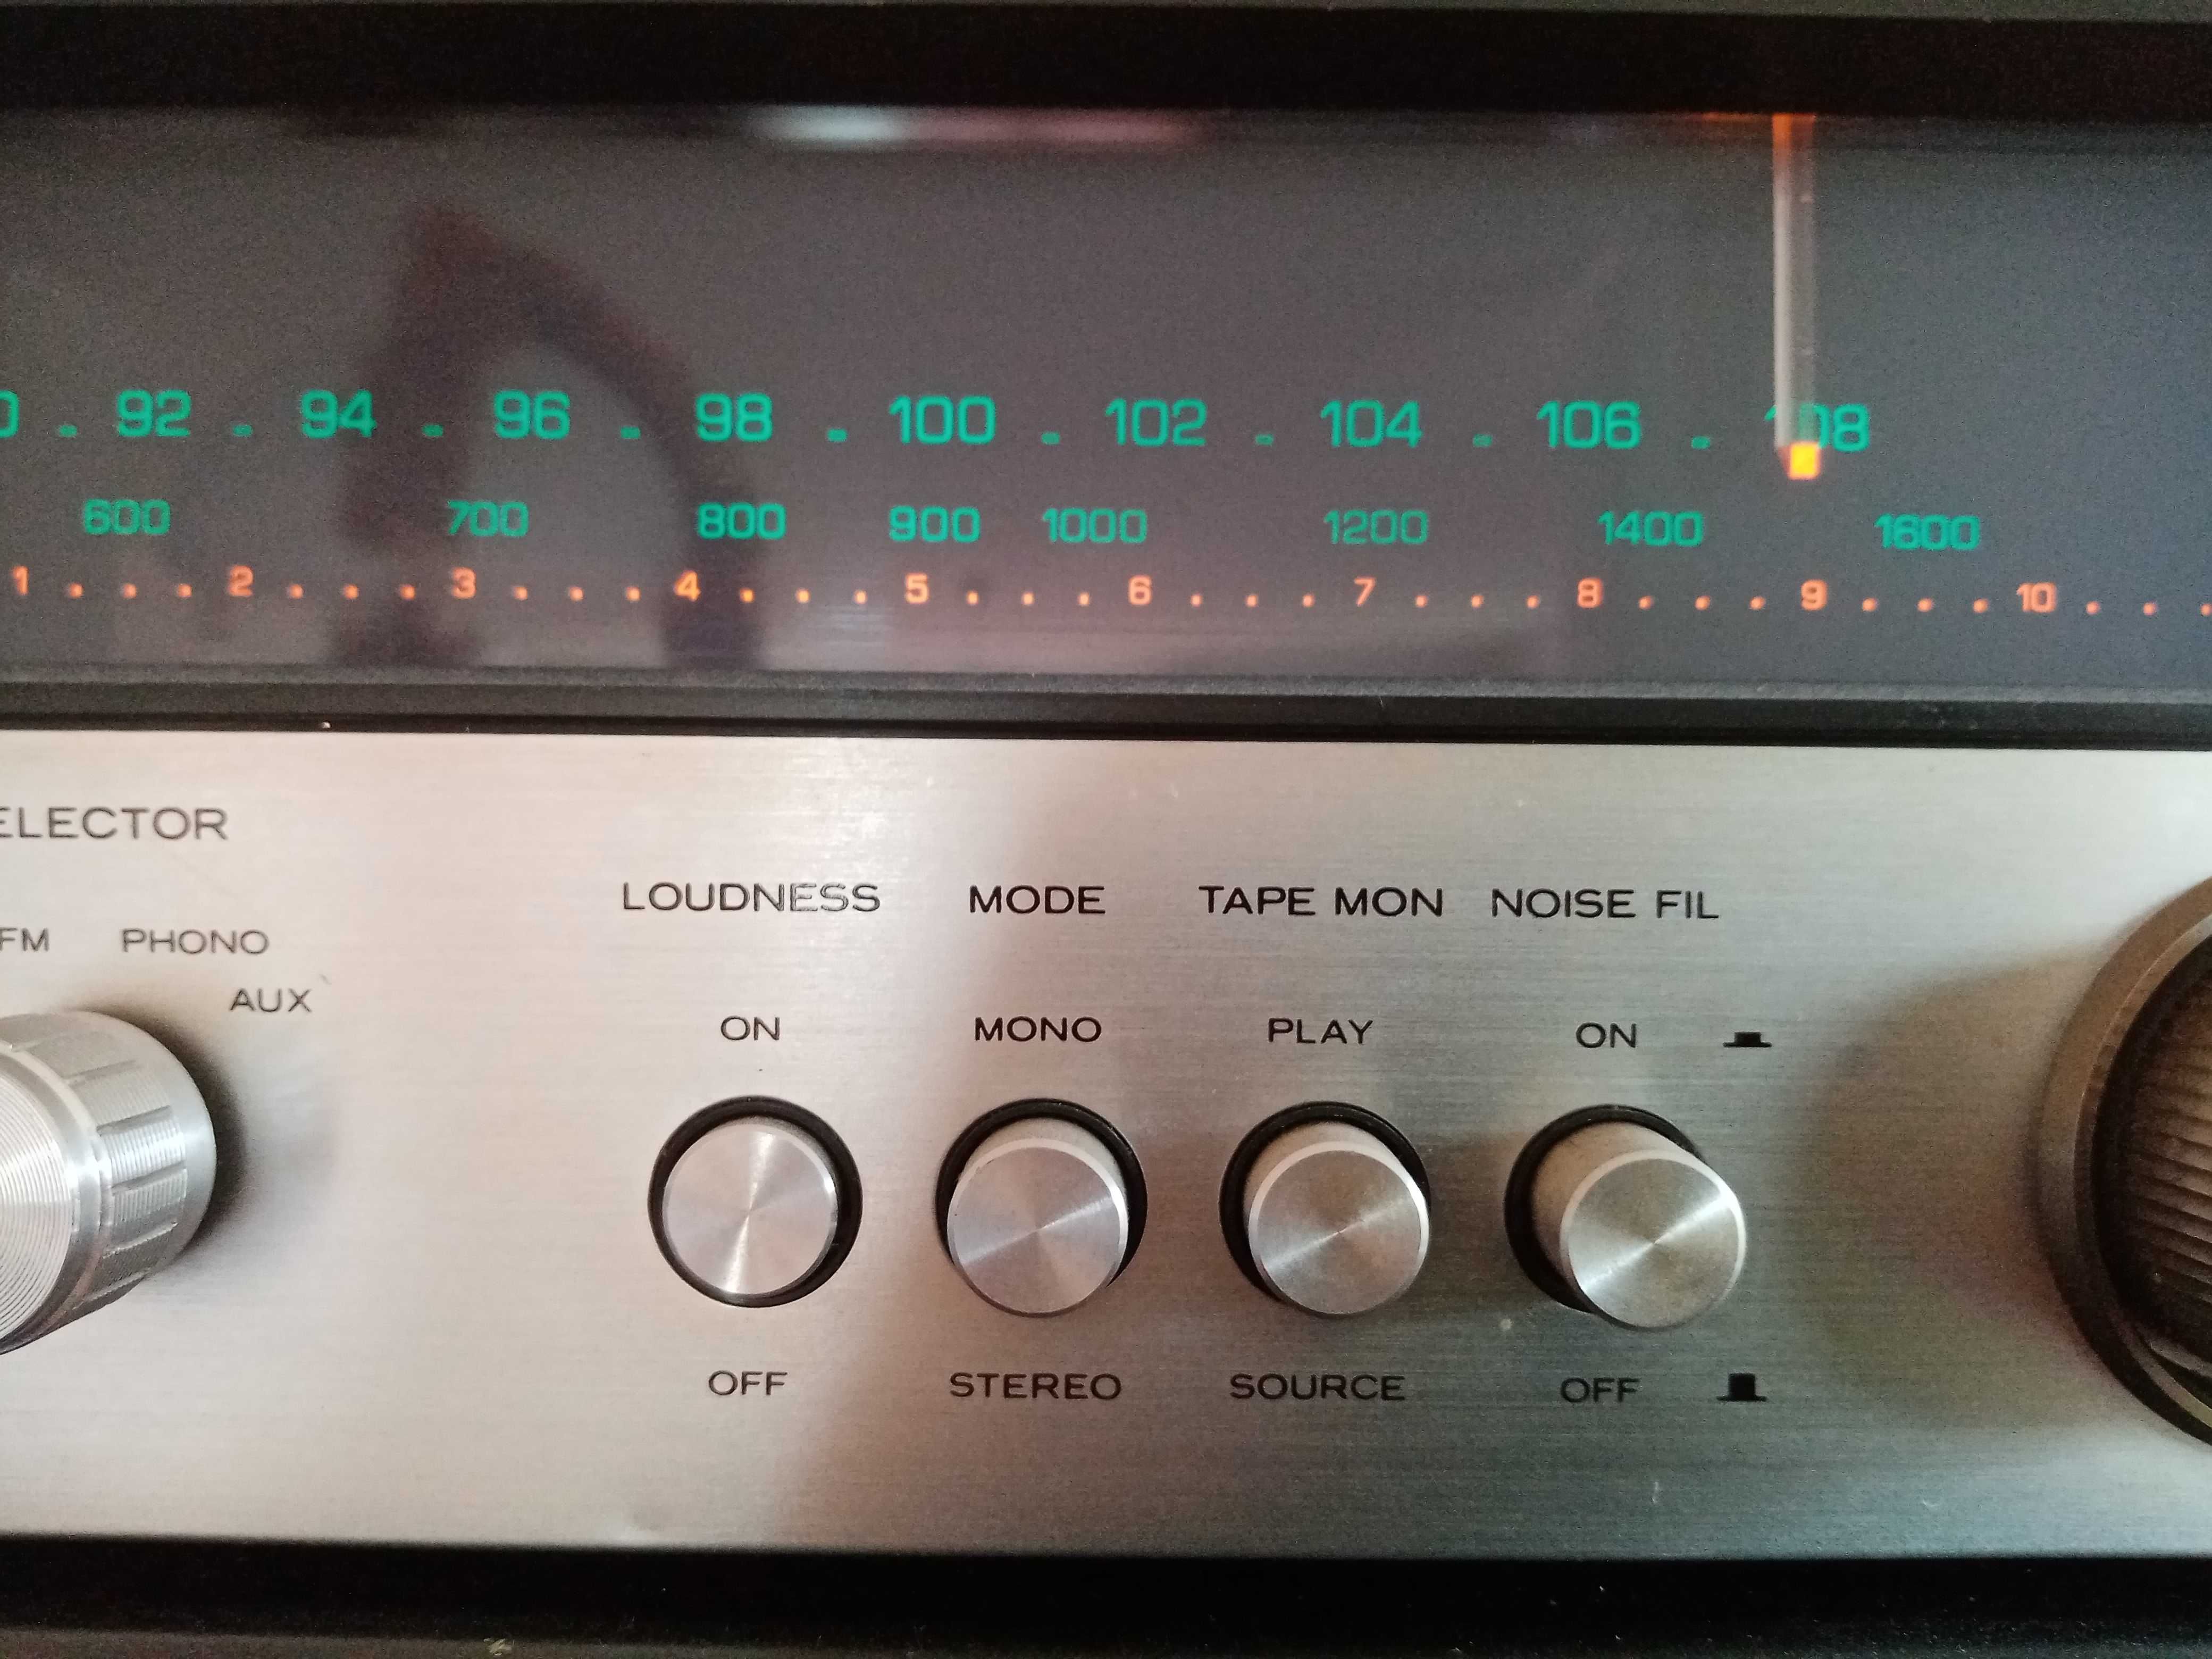 AmpliTuner Vintage Kenwood KR-2400